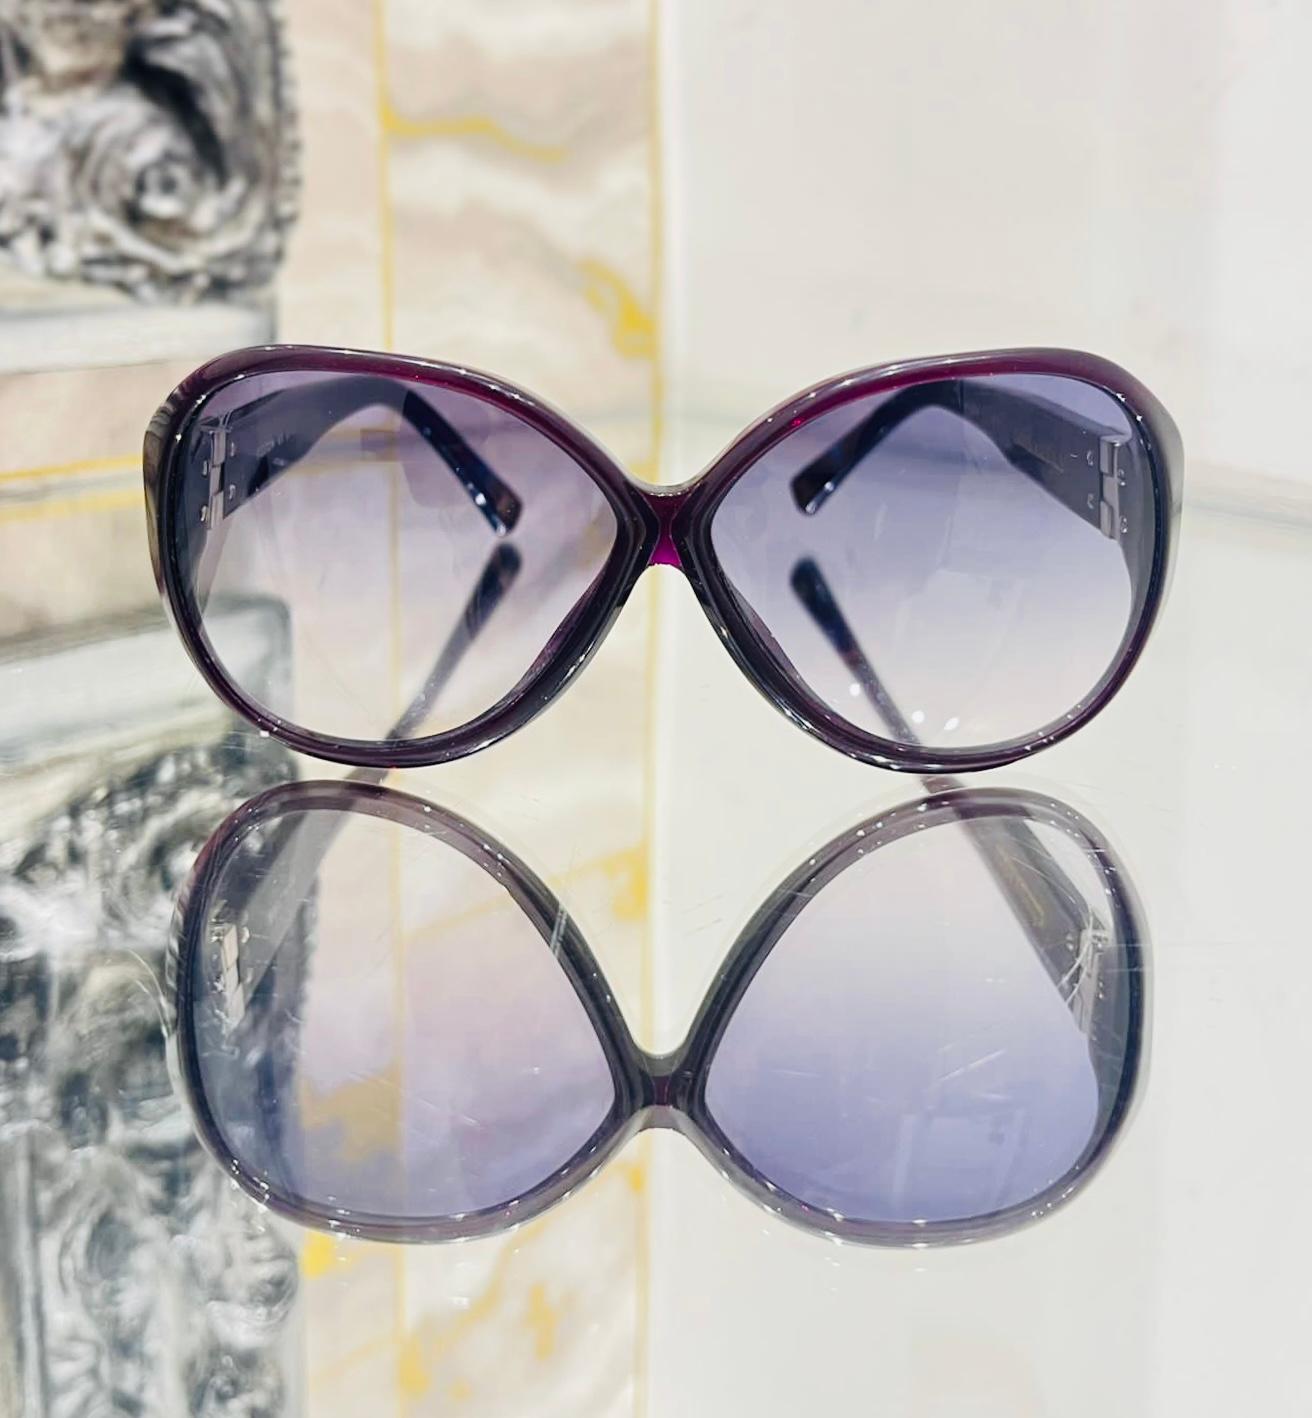 Louis Vuitton Sonnenbrille in Übergröße

Lila gerahmte Sonnenbrille mit abgerundeten Rändern und blauen Verlaufsgläsern.

Mit glitzernden, detaillierten Armen mit silberner Einlage von LV-Monogrammen.

Größe - Einheitsgröße

Zustand - Sehr